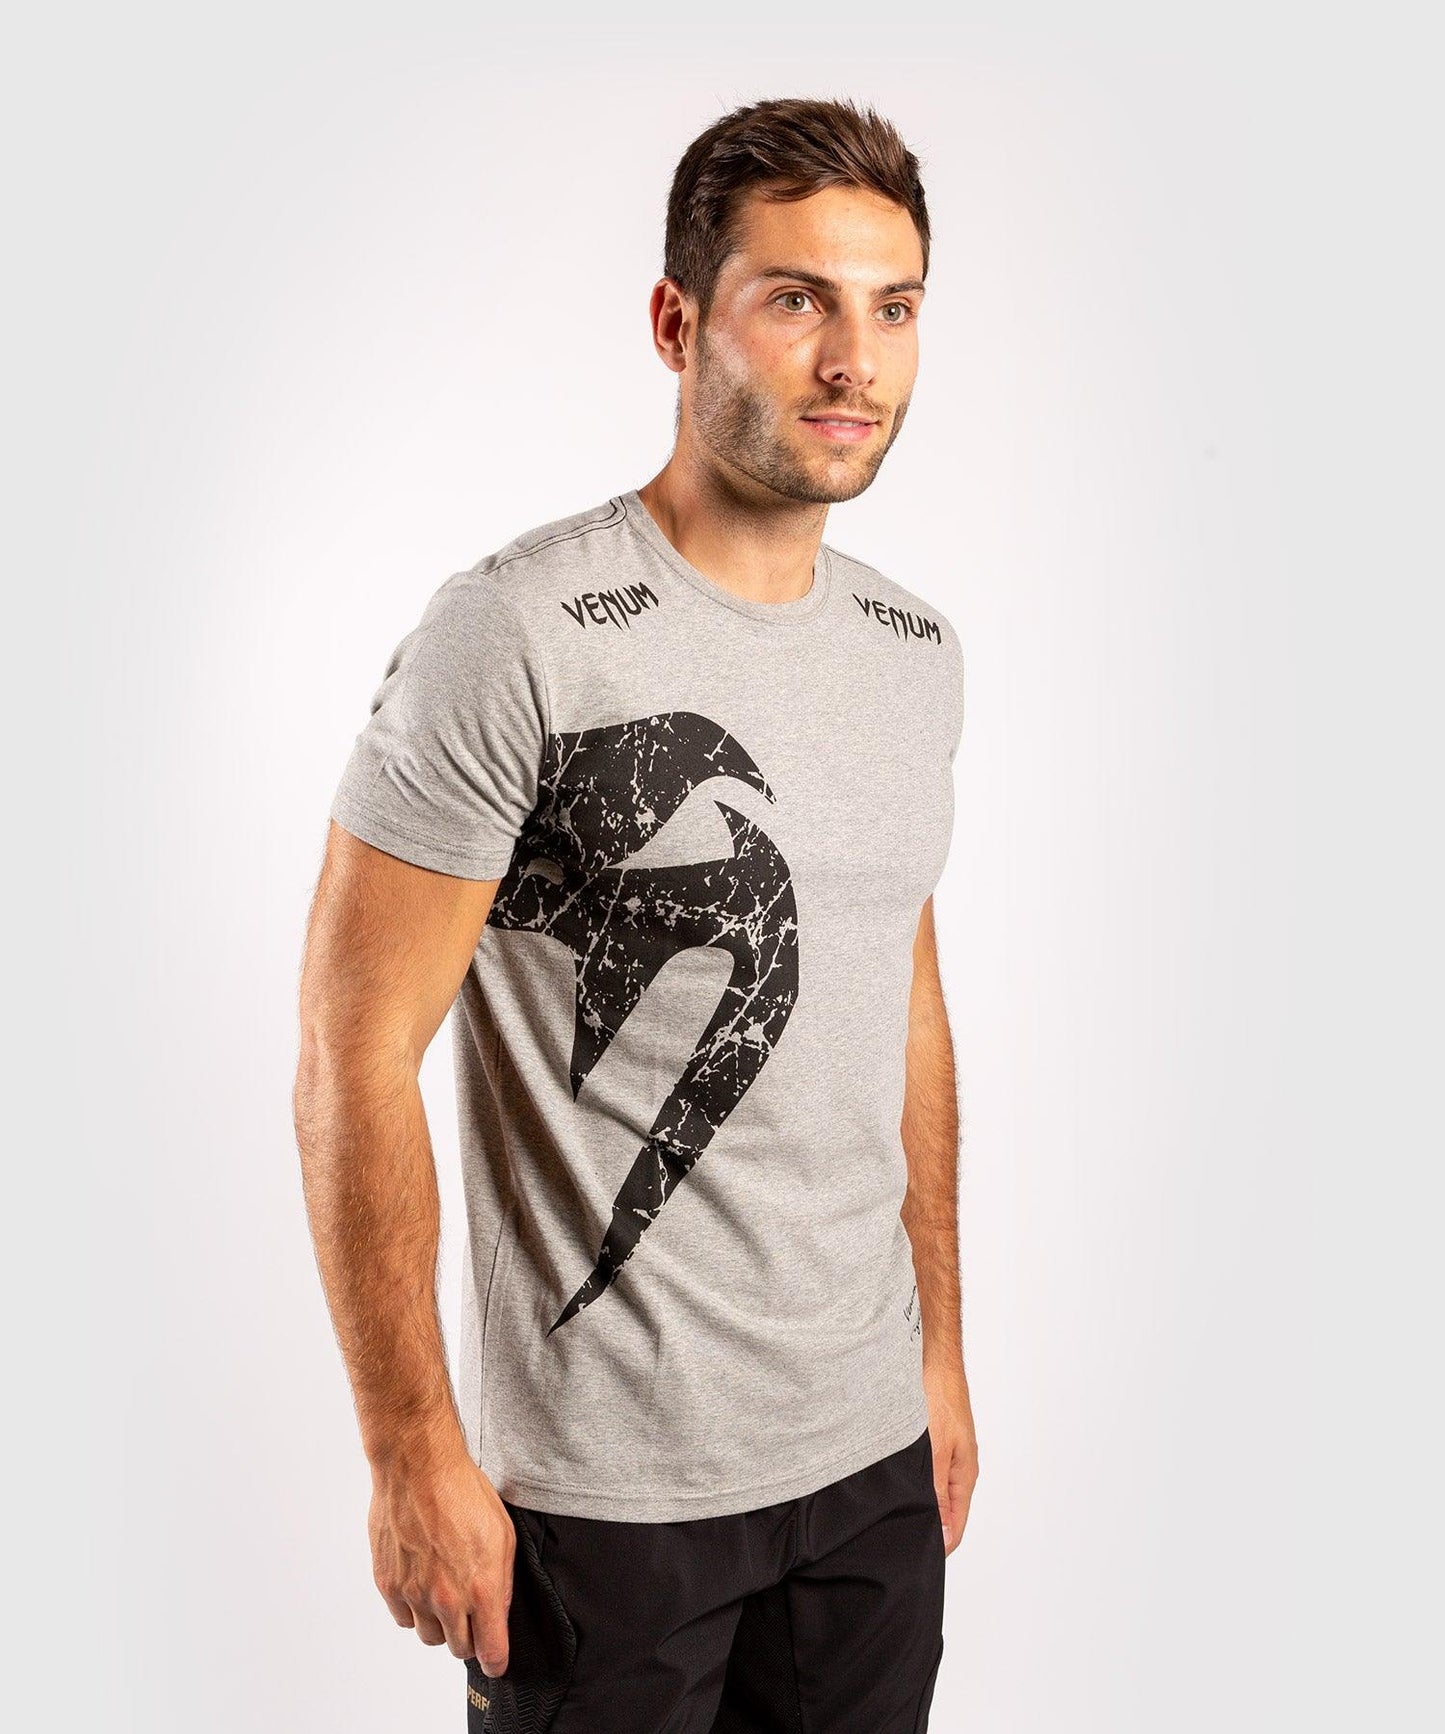 Venum Giant T-shirt - Grey/Black Picture 3